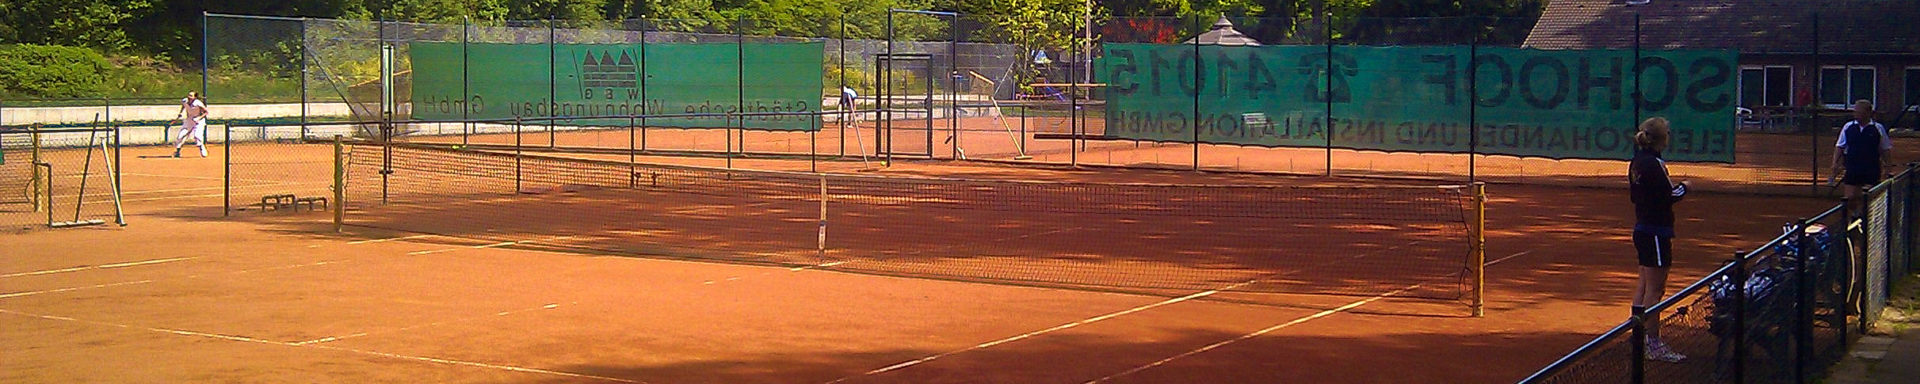 Celle Tennis Wietzenbruch